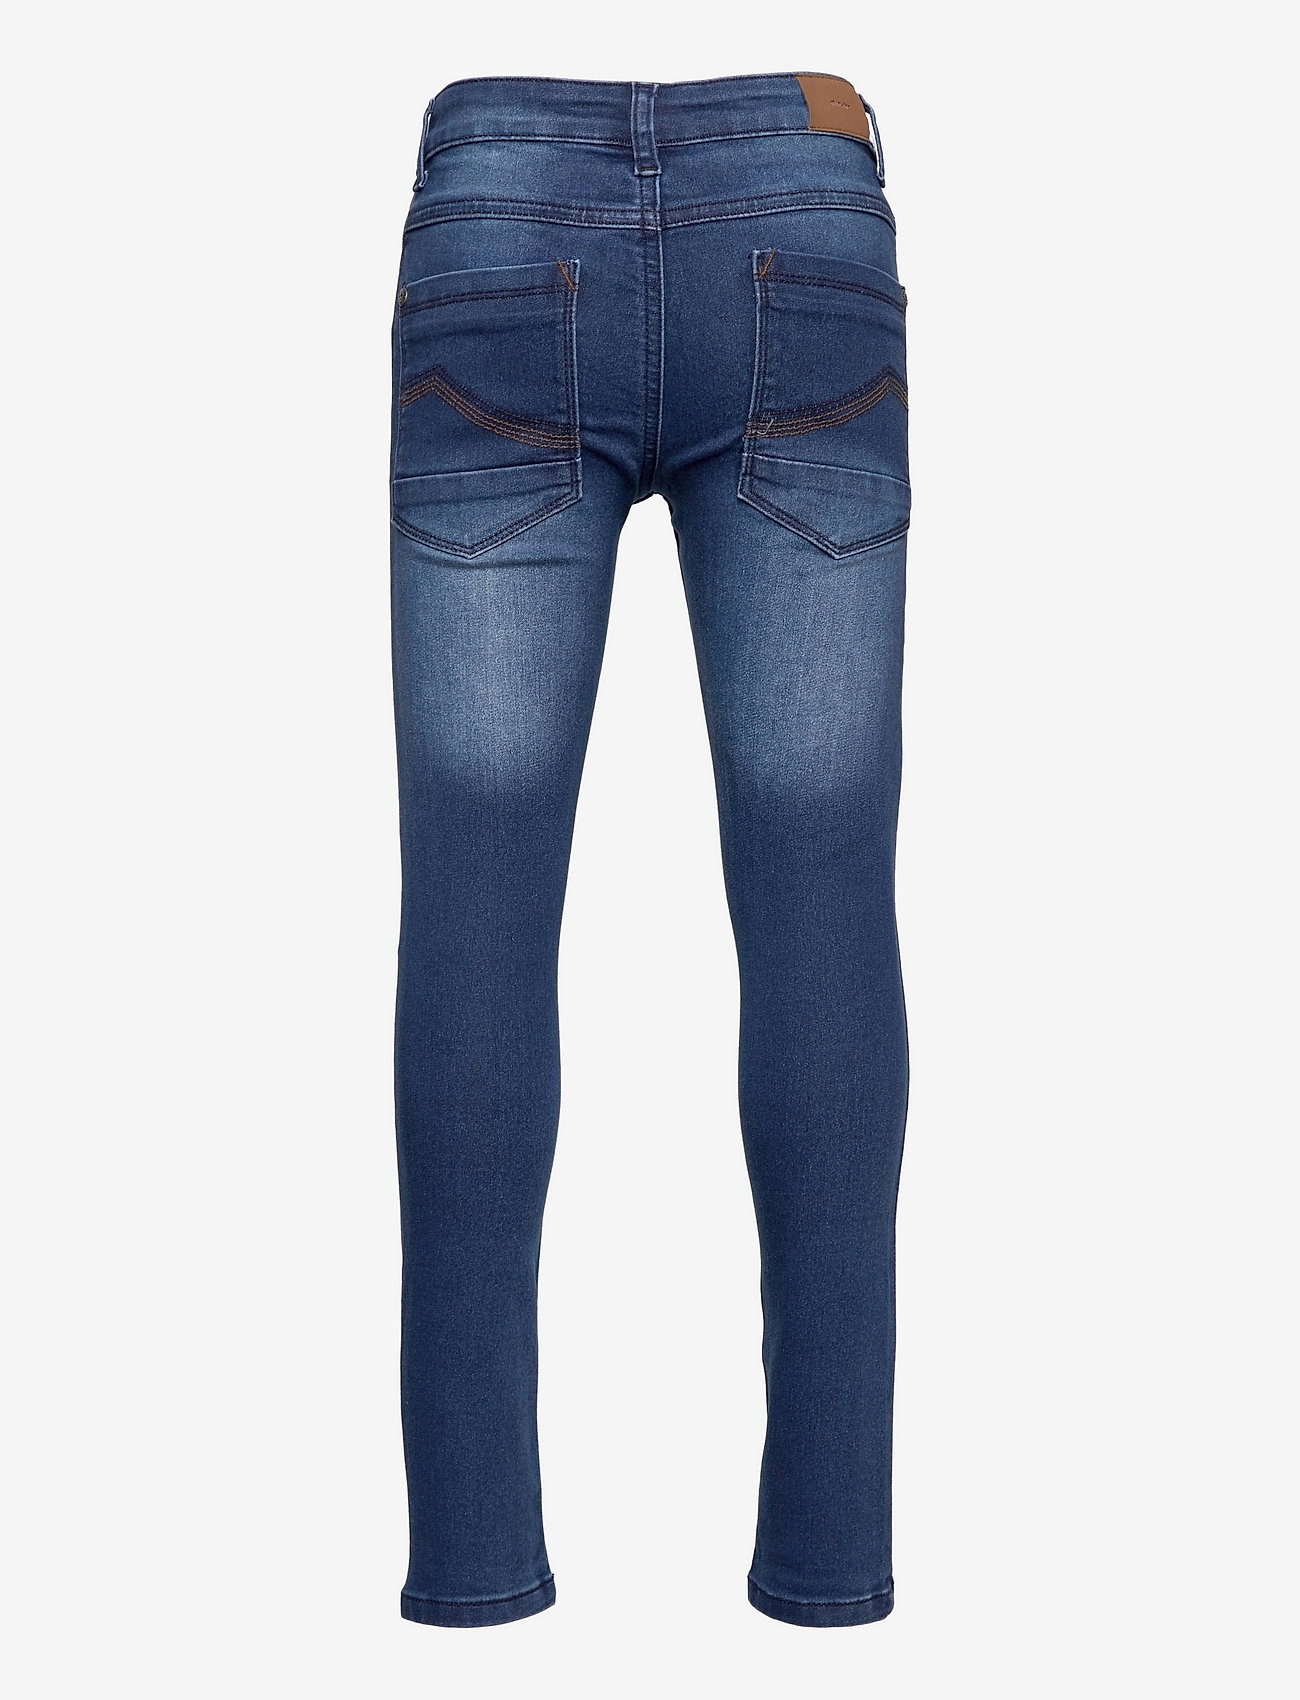 Minymo - Jeans boy stretch slim fit - skinny jeans - denim - 1